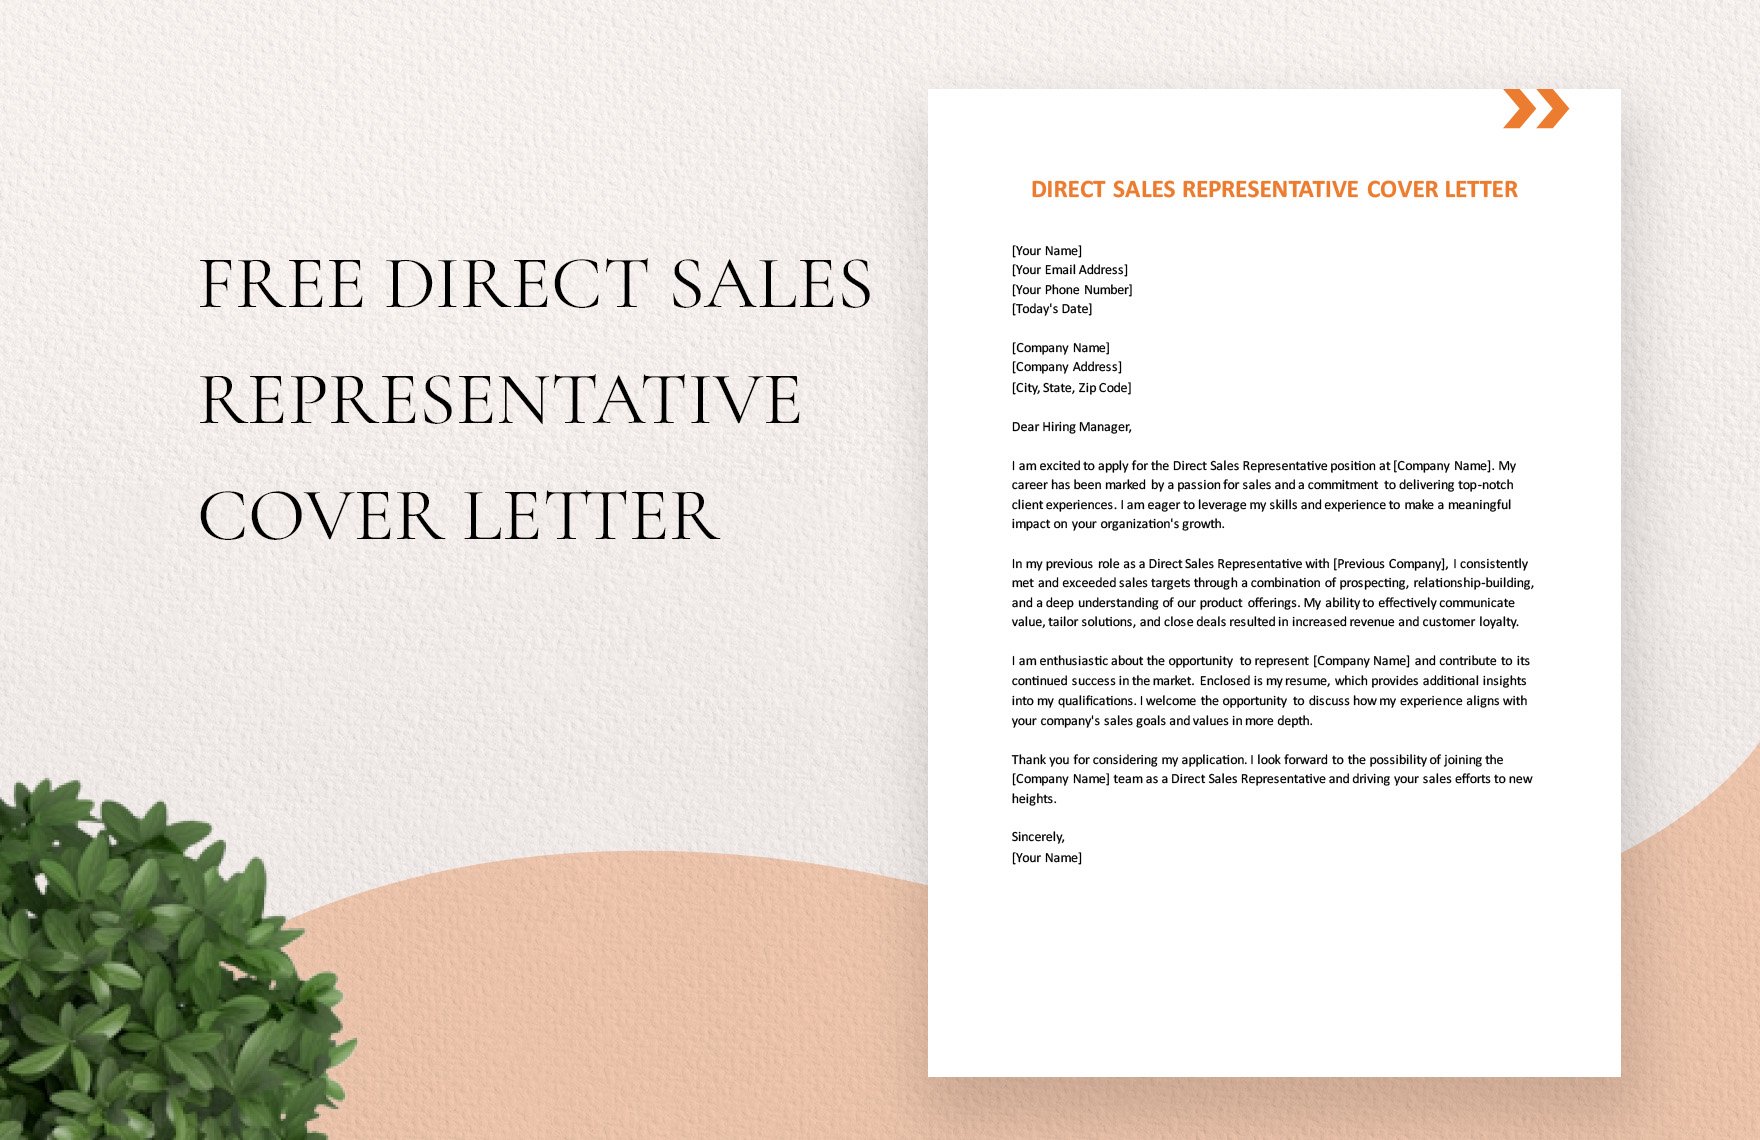 Direct Sales Representative Cover Letter